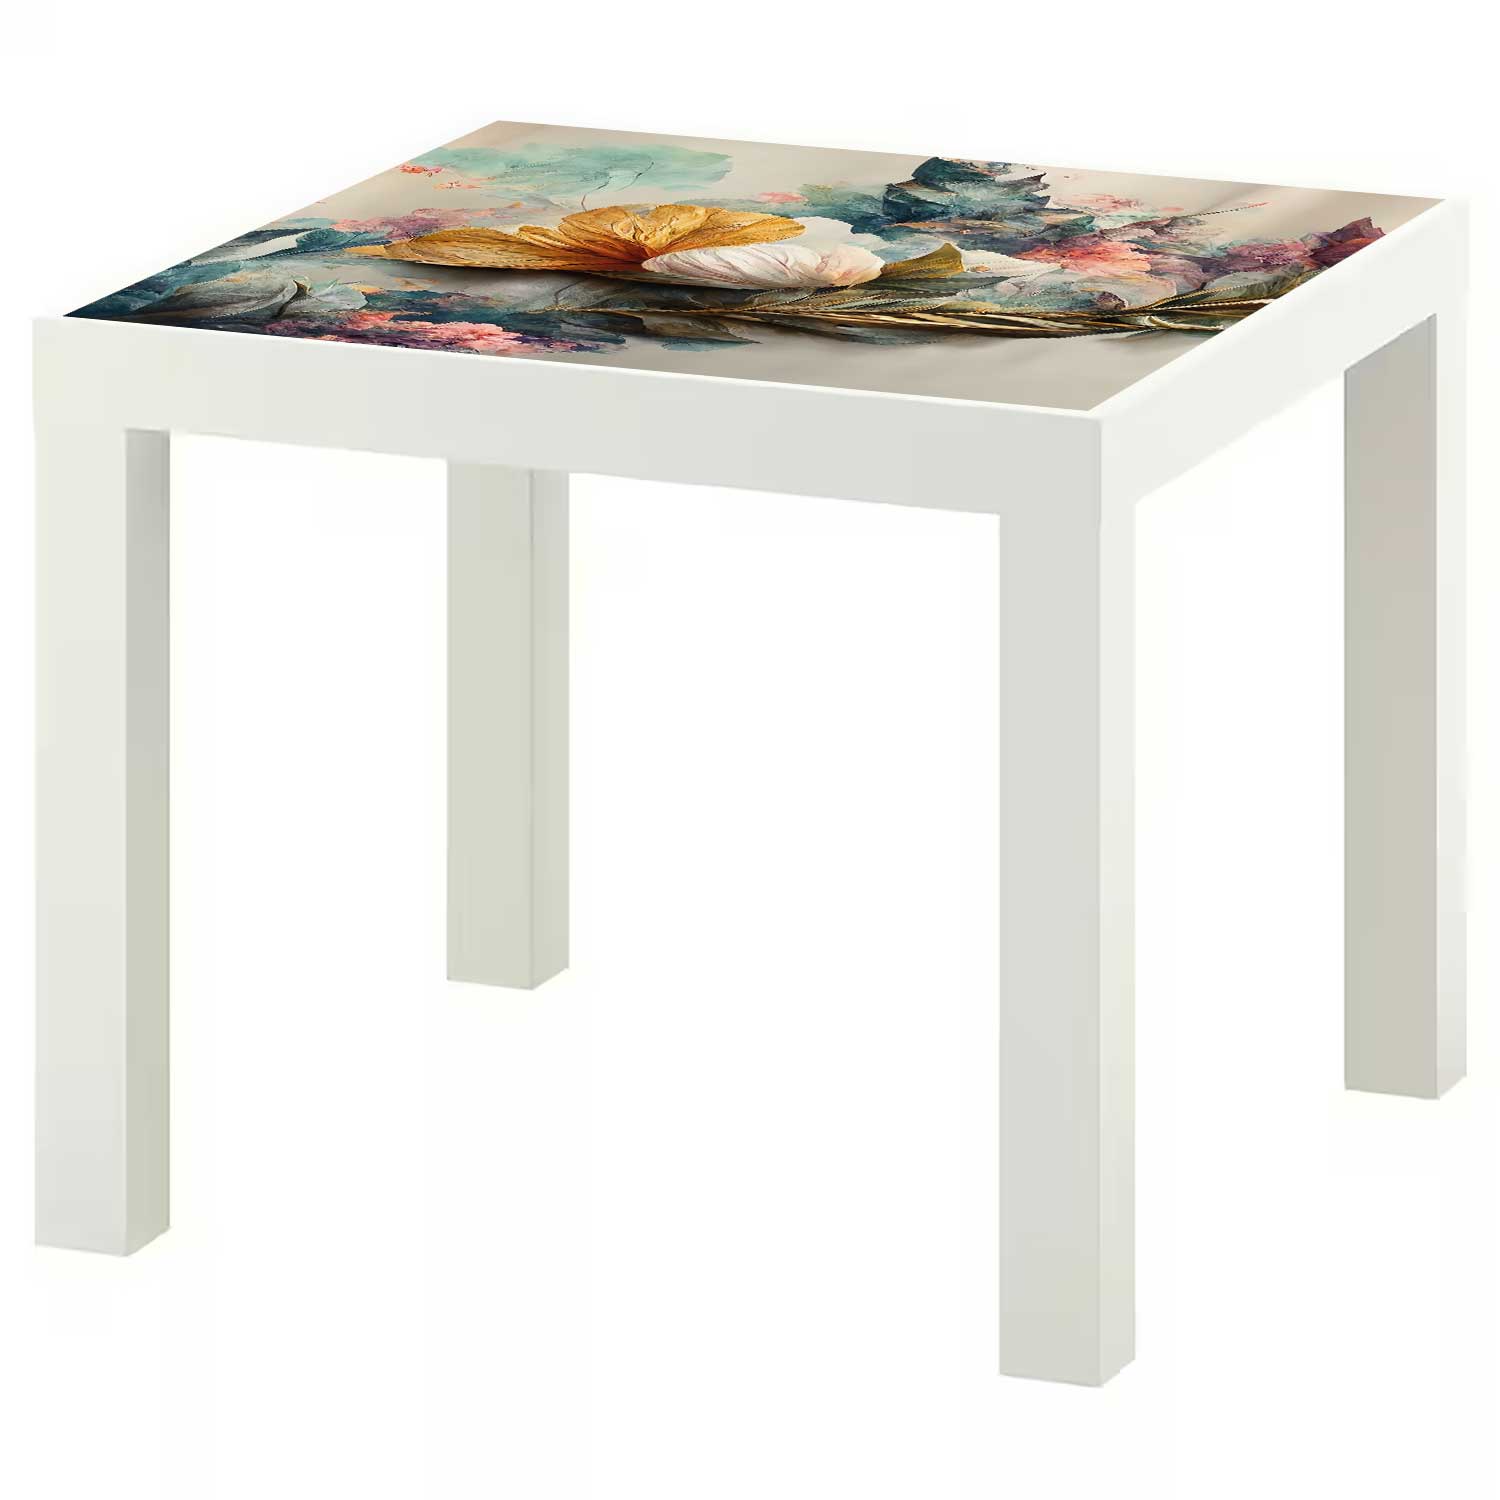 Möbelfolie für IKEA Lack Tisch 55x55 cm 'Blumenstrauß'